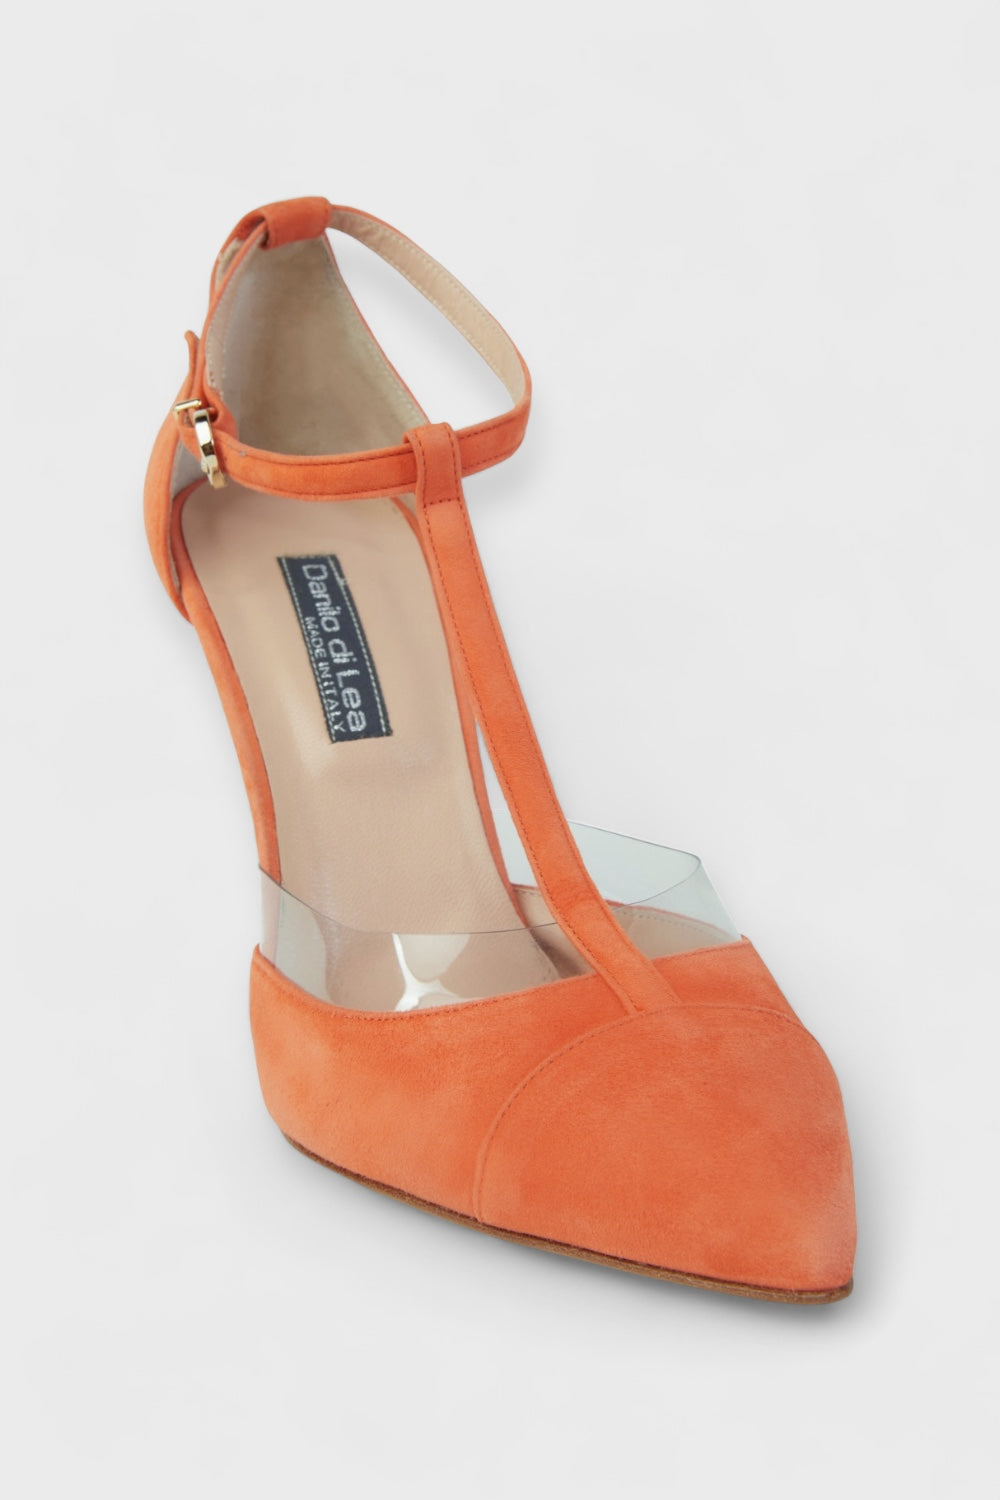 Arancia Orange T-Strap Suede Heels by Danilo di Lea Italian Women's Shoes